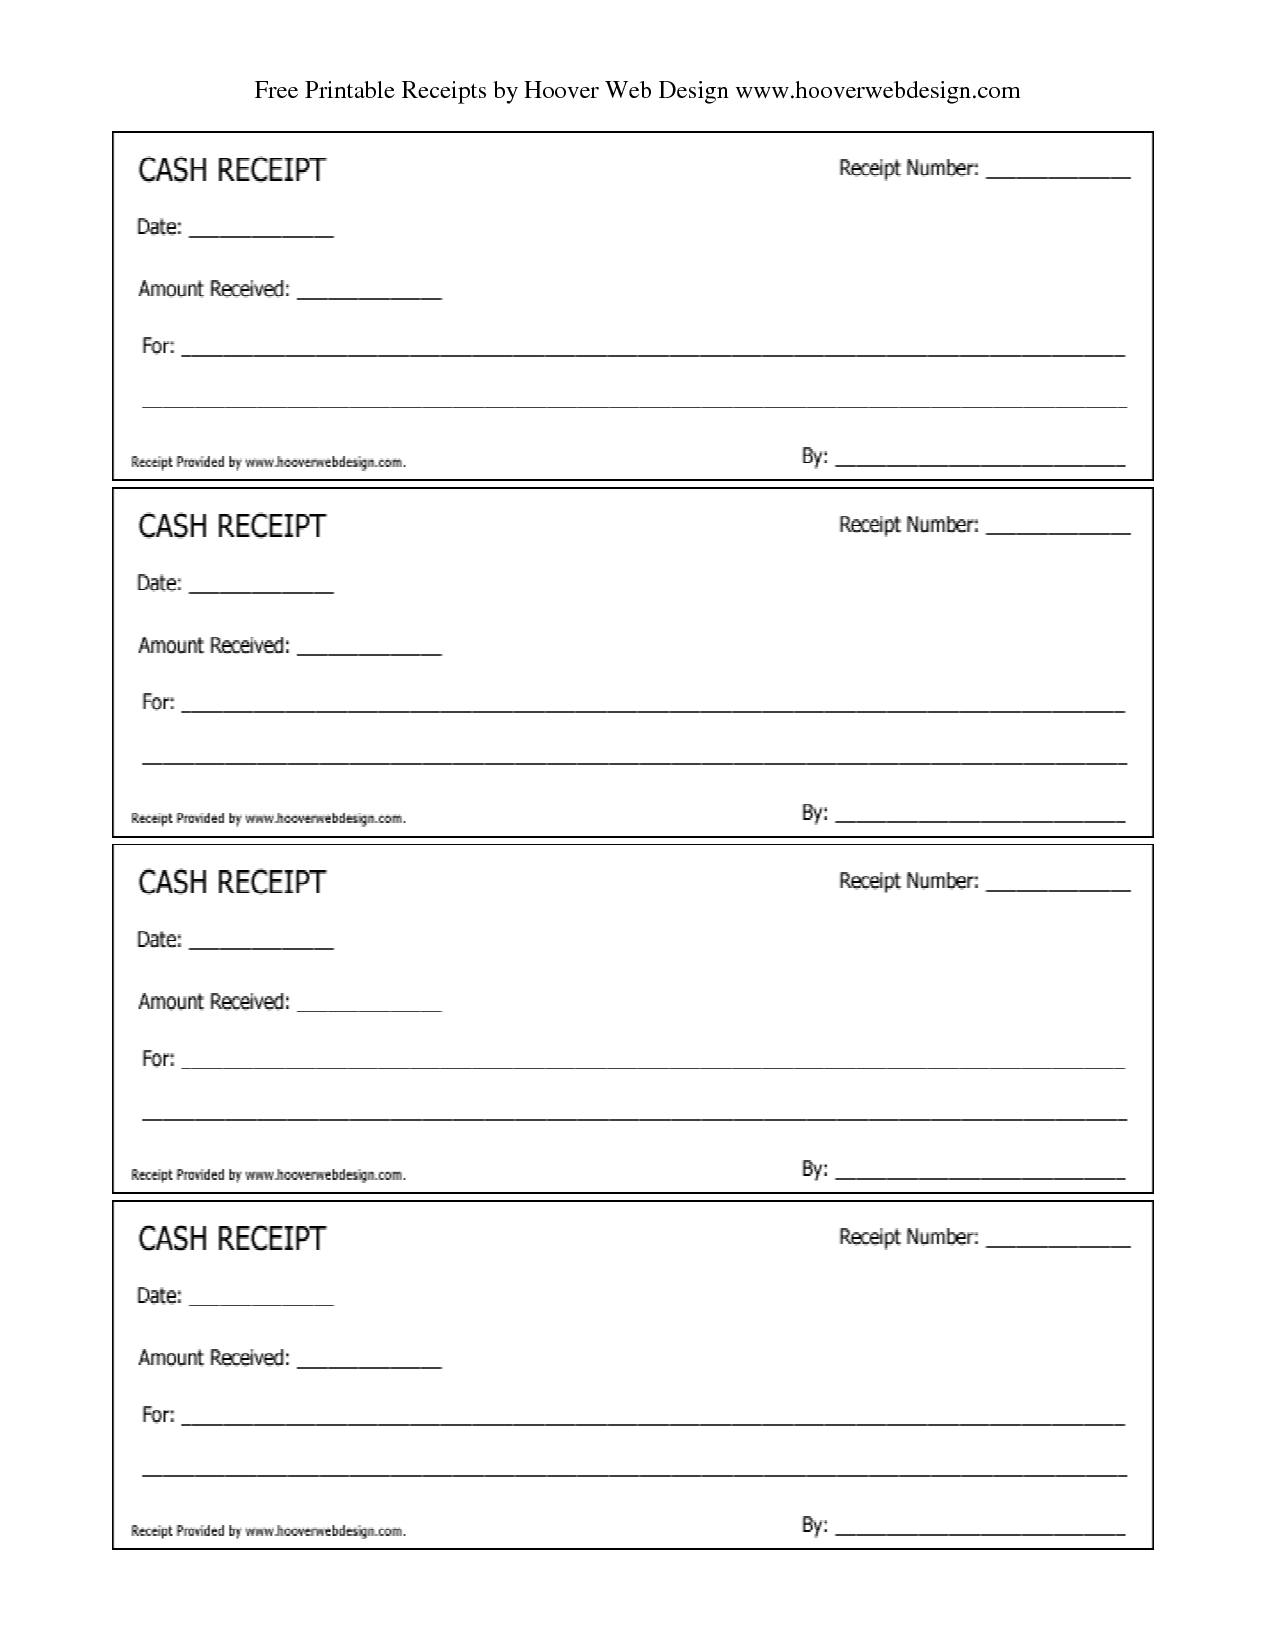 Free Printable Receipt Templates | Free Printable Cash Receipts - Free Printable Survey Generator